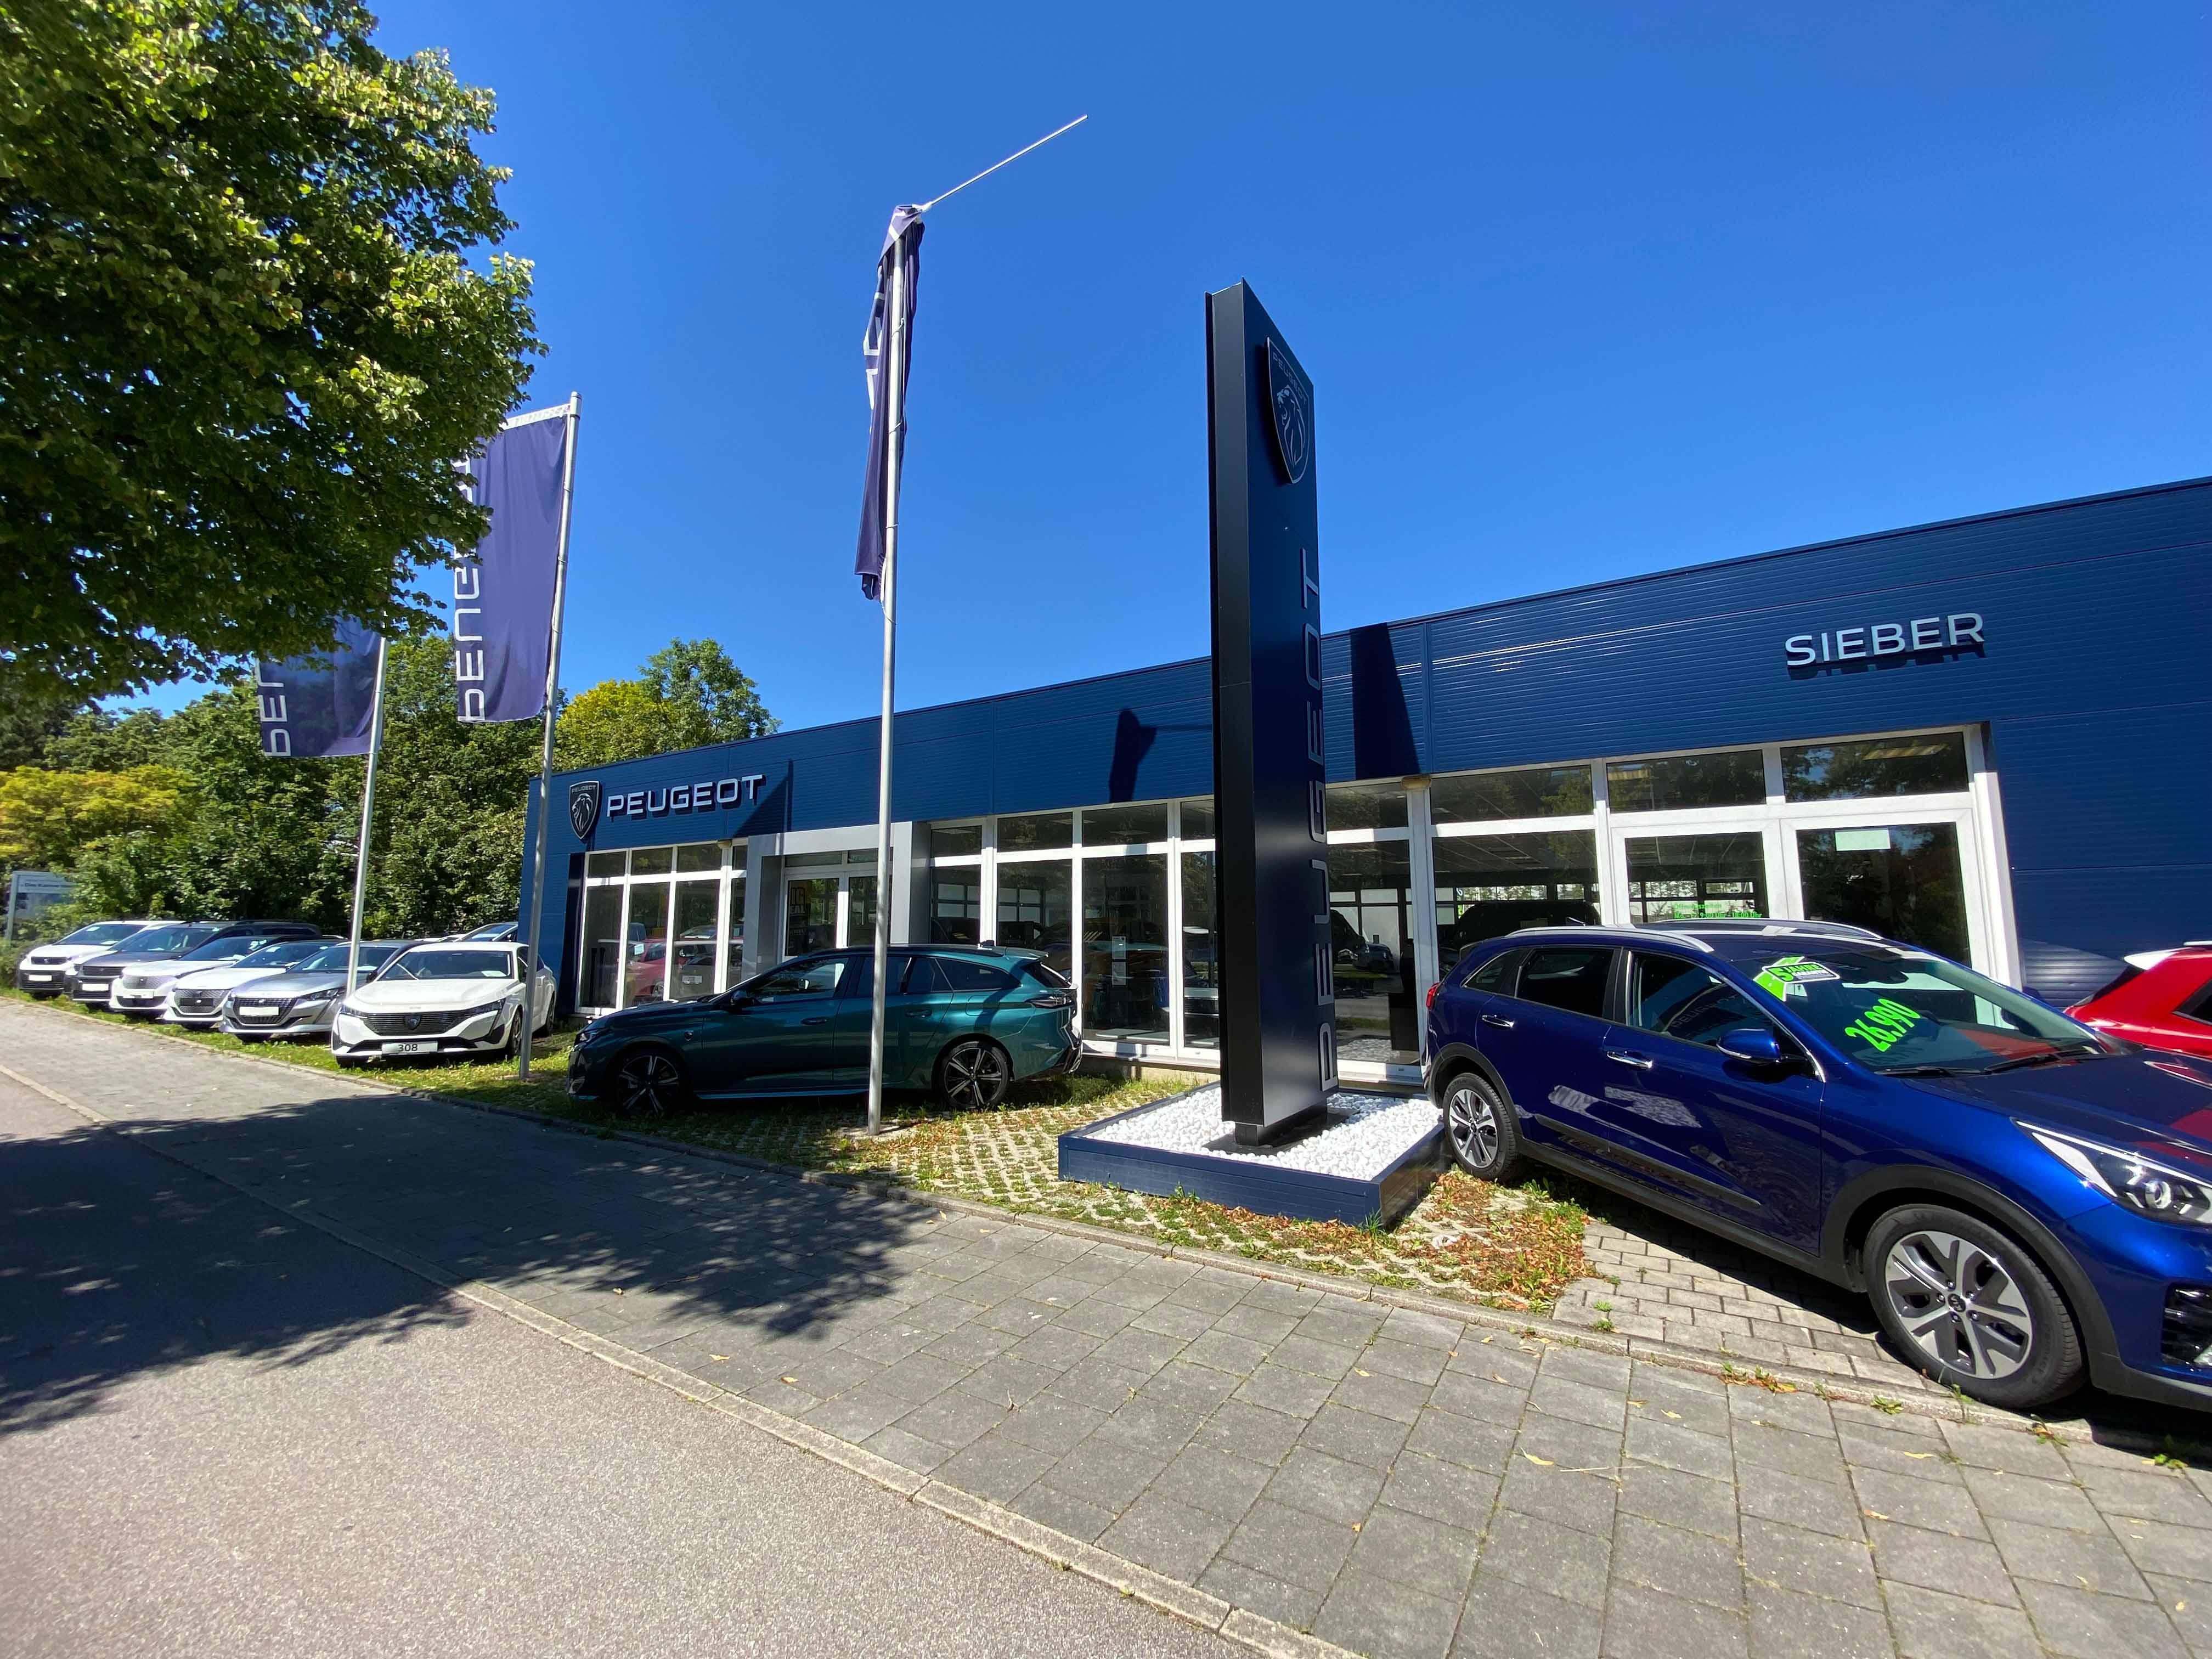 Fotos - Sieber Automobile GmbH & Co. KG - 7